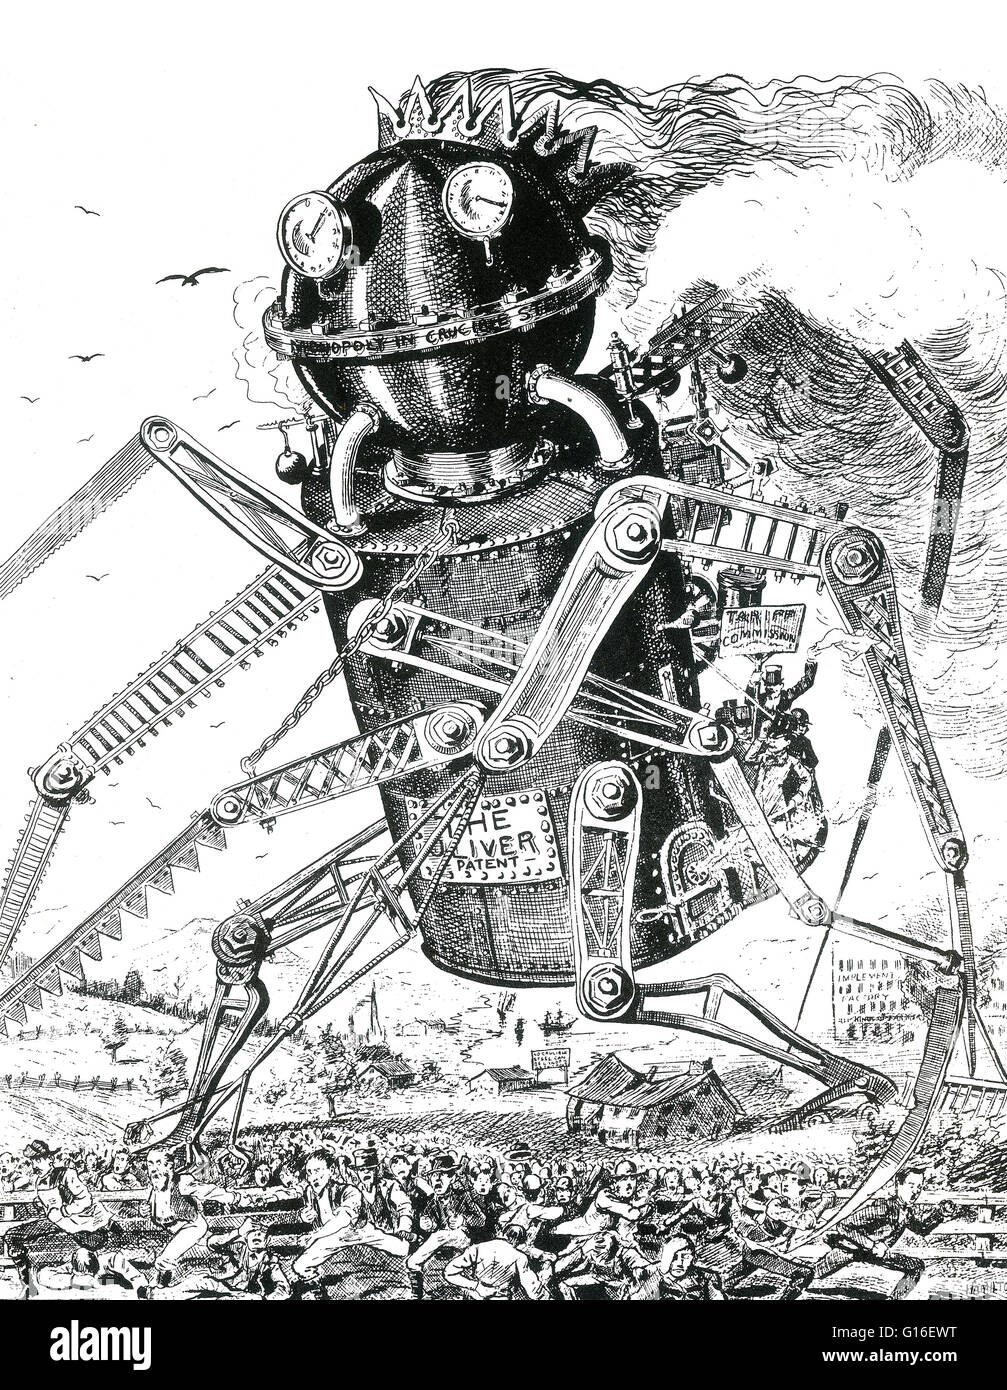 Cartoon politico che mostra il brevetto Oliver - monopolio nel crogiolo acciaio - come un gigante di vapore robot guidati scatenandosi attraverso la diffusione di una folla di persone con la commissione tariffaria equitazione sulla sua schiena. Un edificio etichettato 'Attrezzo' in fabbrica e un segno, 'n. Foto Stock